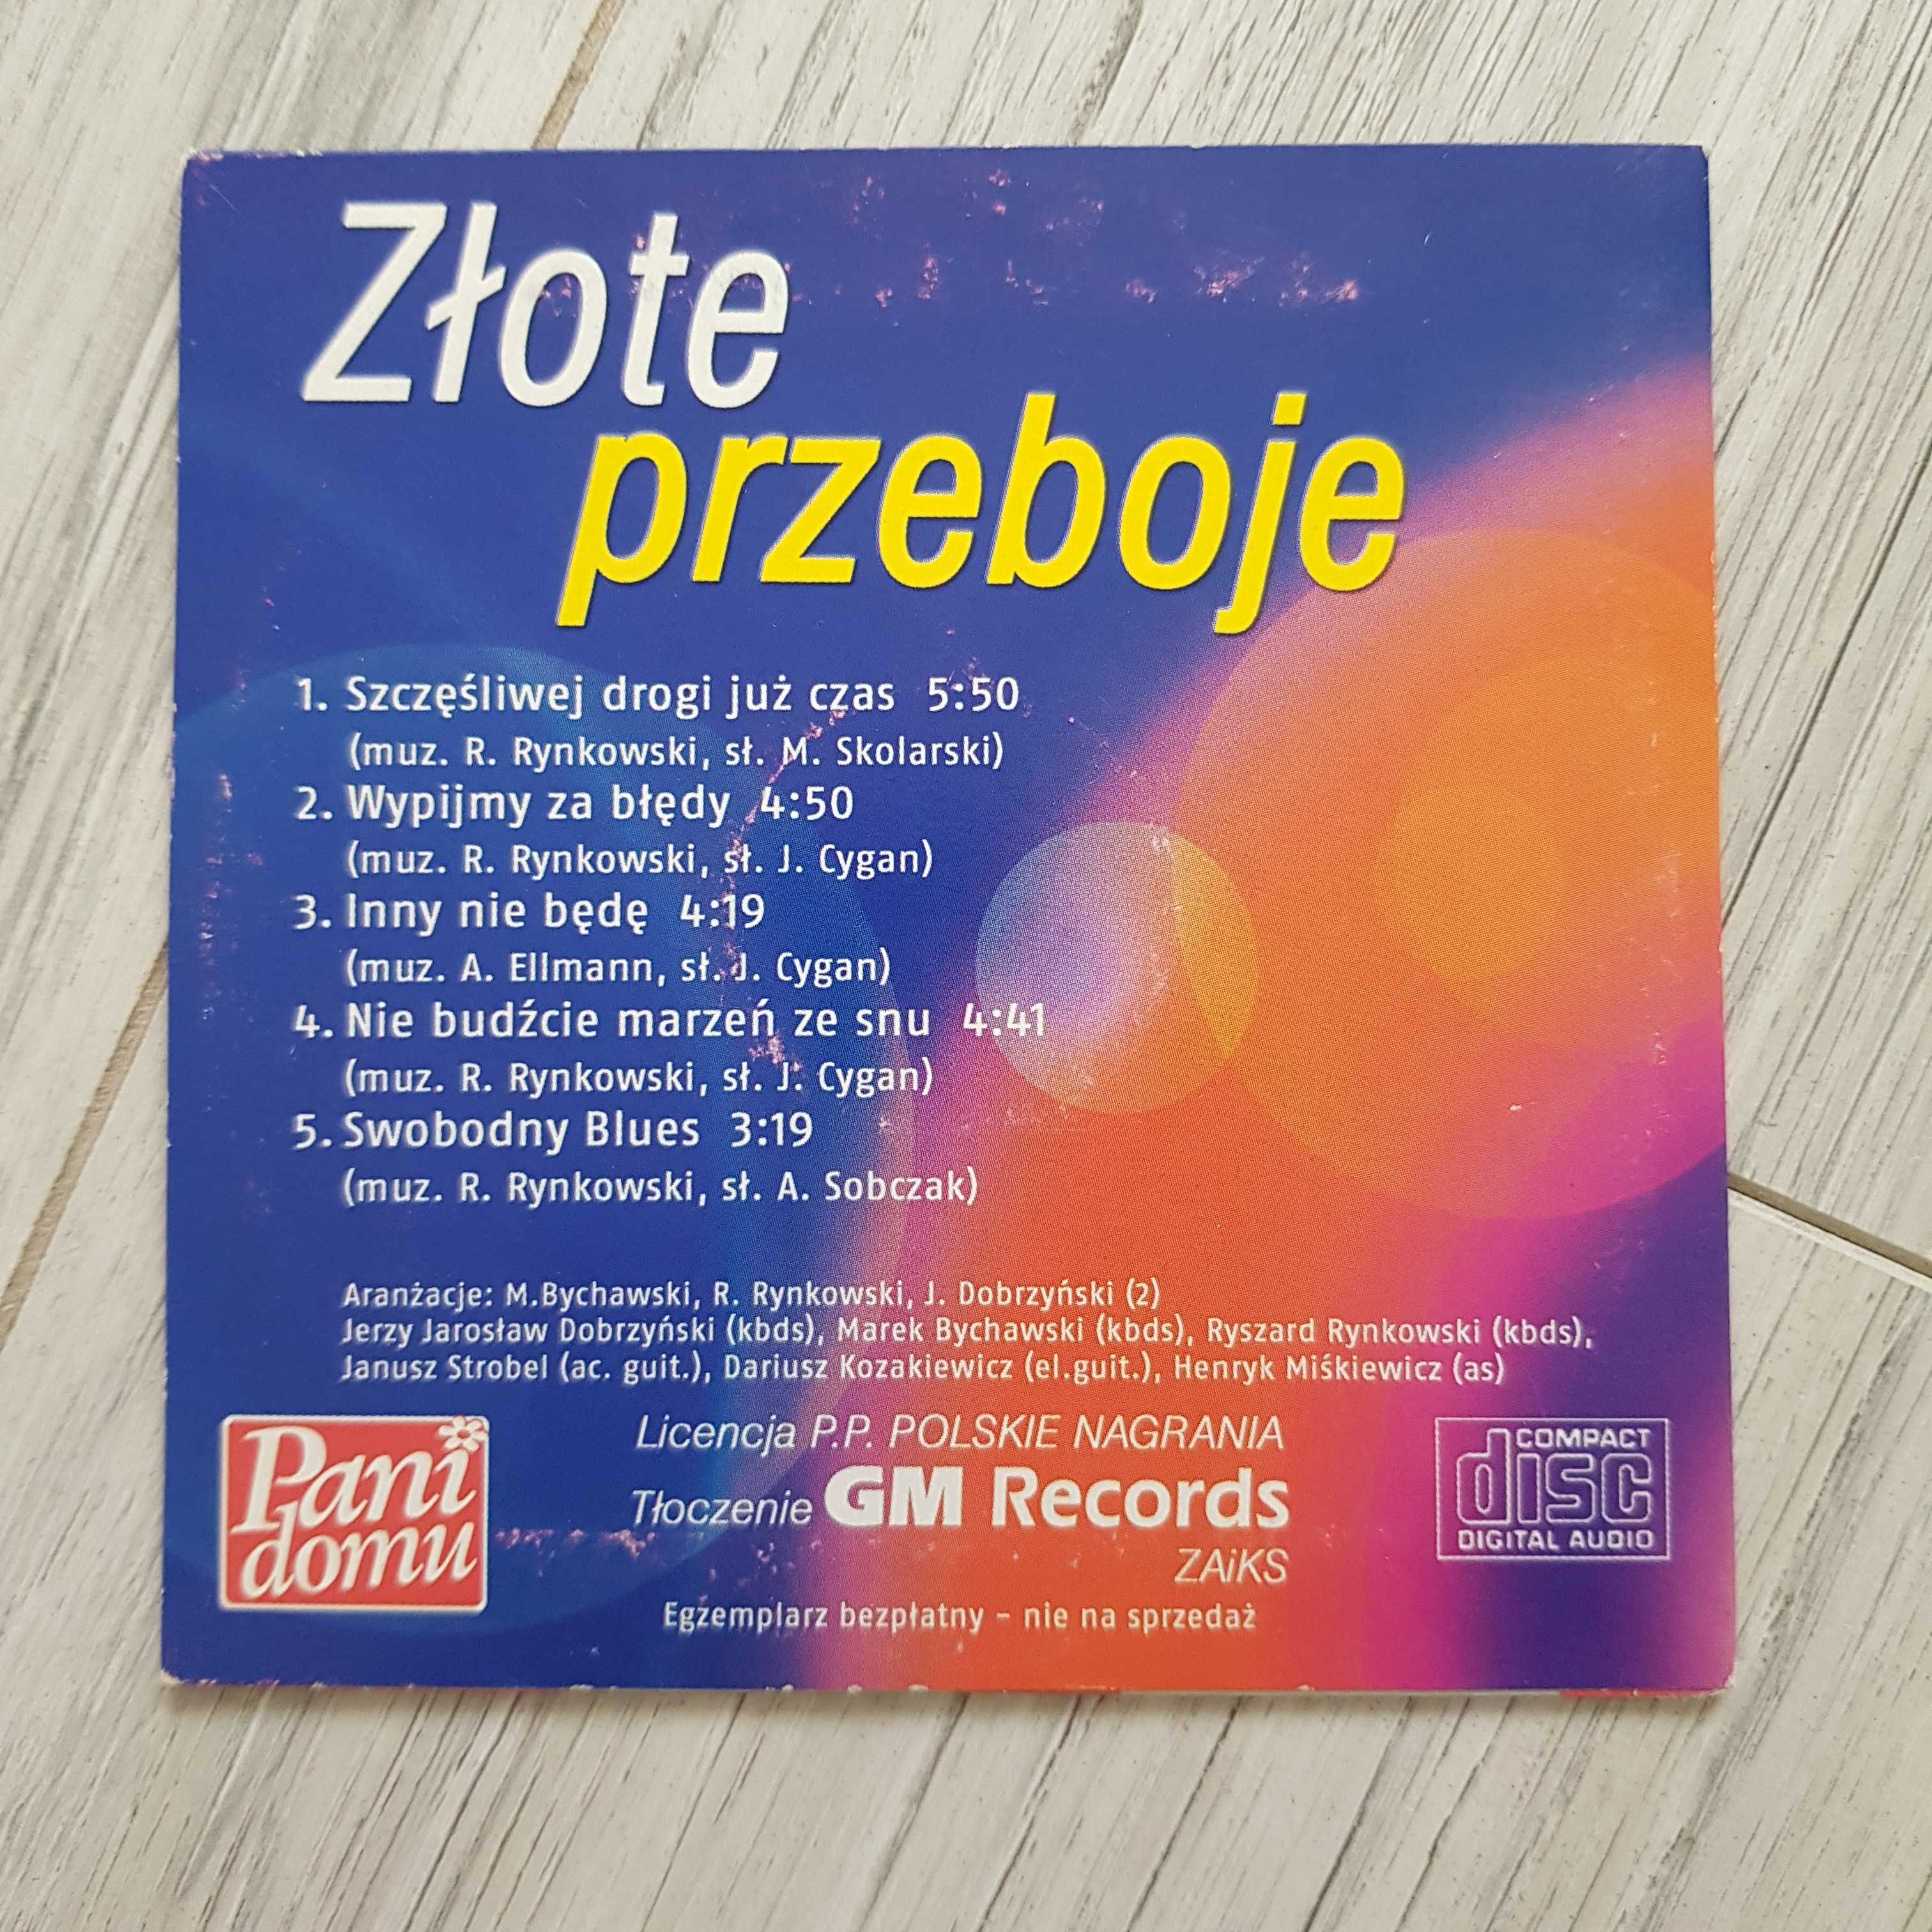 Ryszard Rynkowski - Intymnie płyta CD